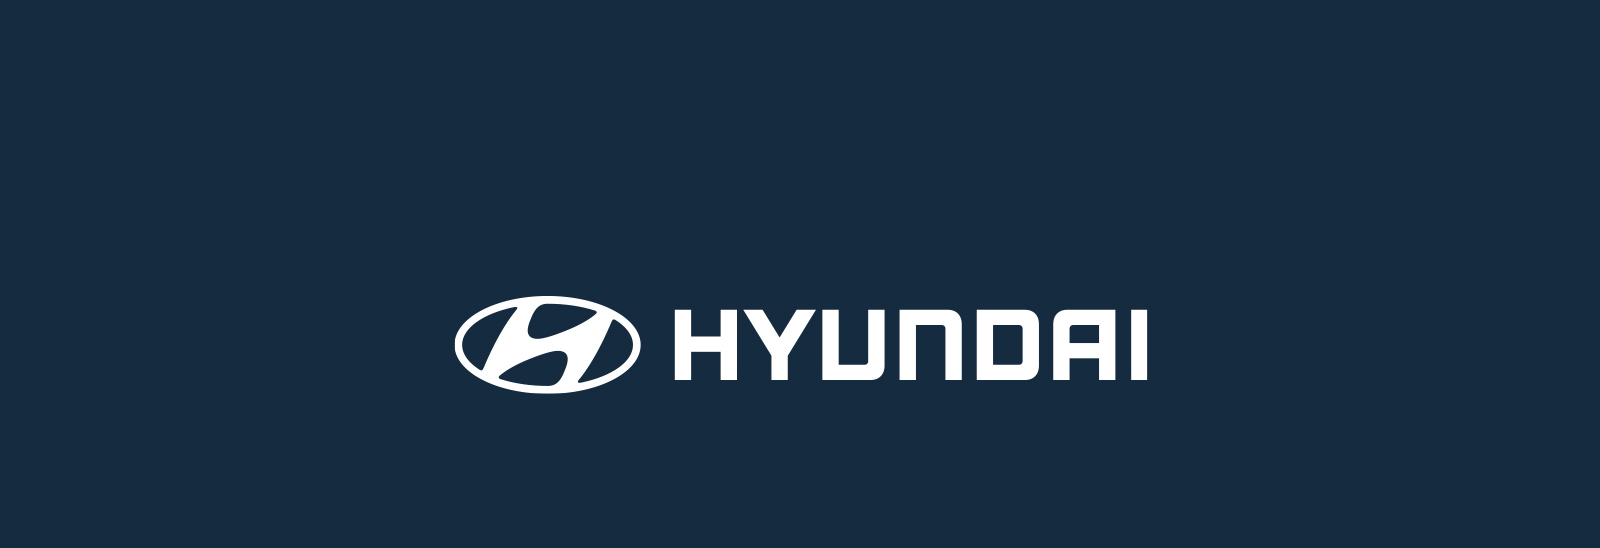 Logo Hyundai en blanco sobre fondo azul